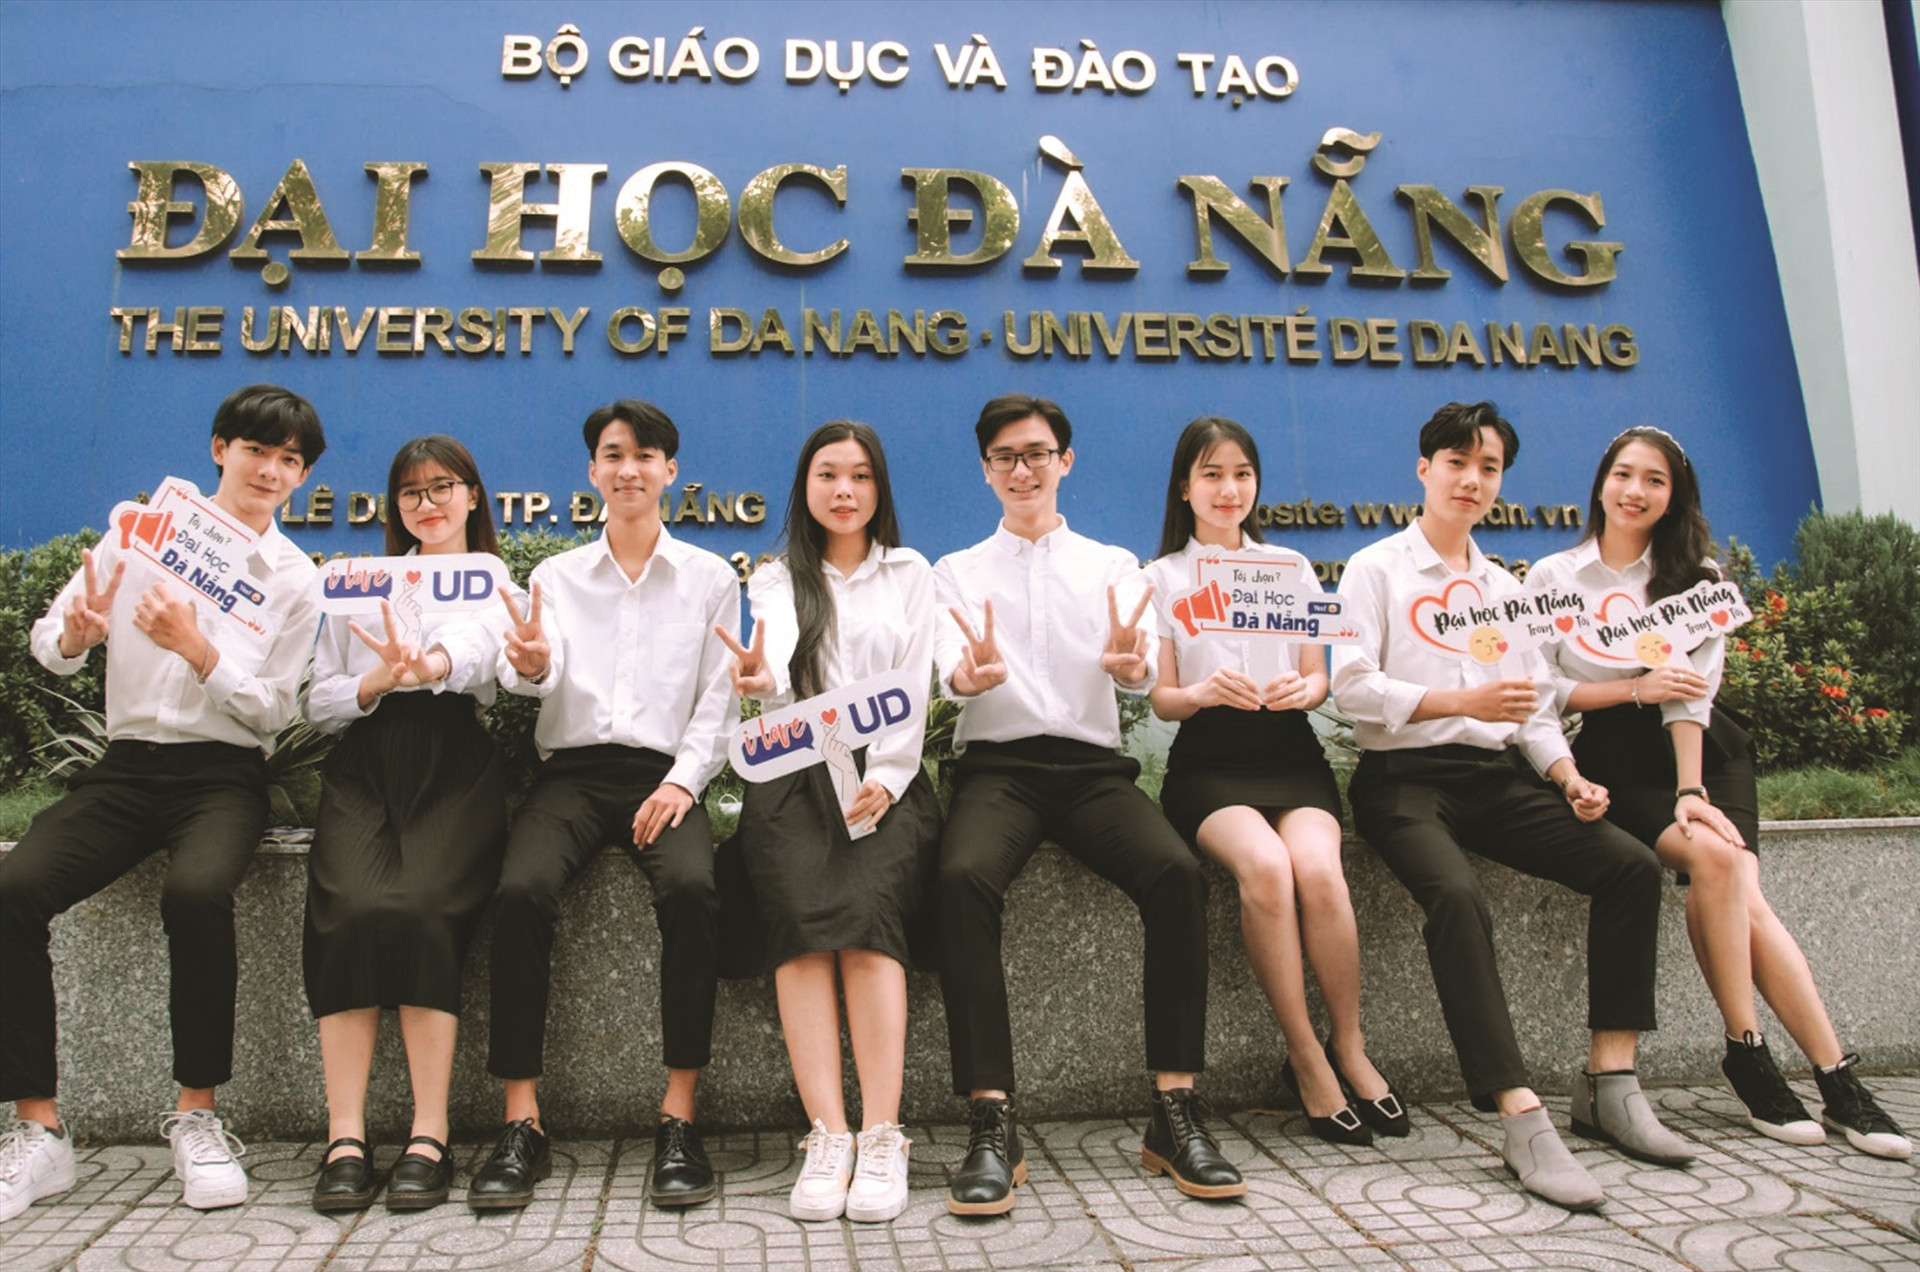 Đại học Đà Nẵng luôn là địa chỉ uy tín, tin cậy được thí sinh cùng quý phụ huynh tin tưởng, lựa chọn qua mỗi mùa tuyển sinh.